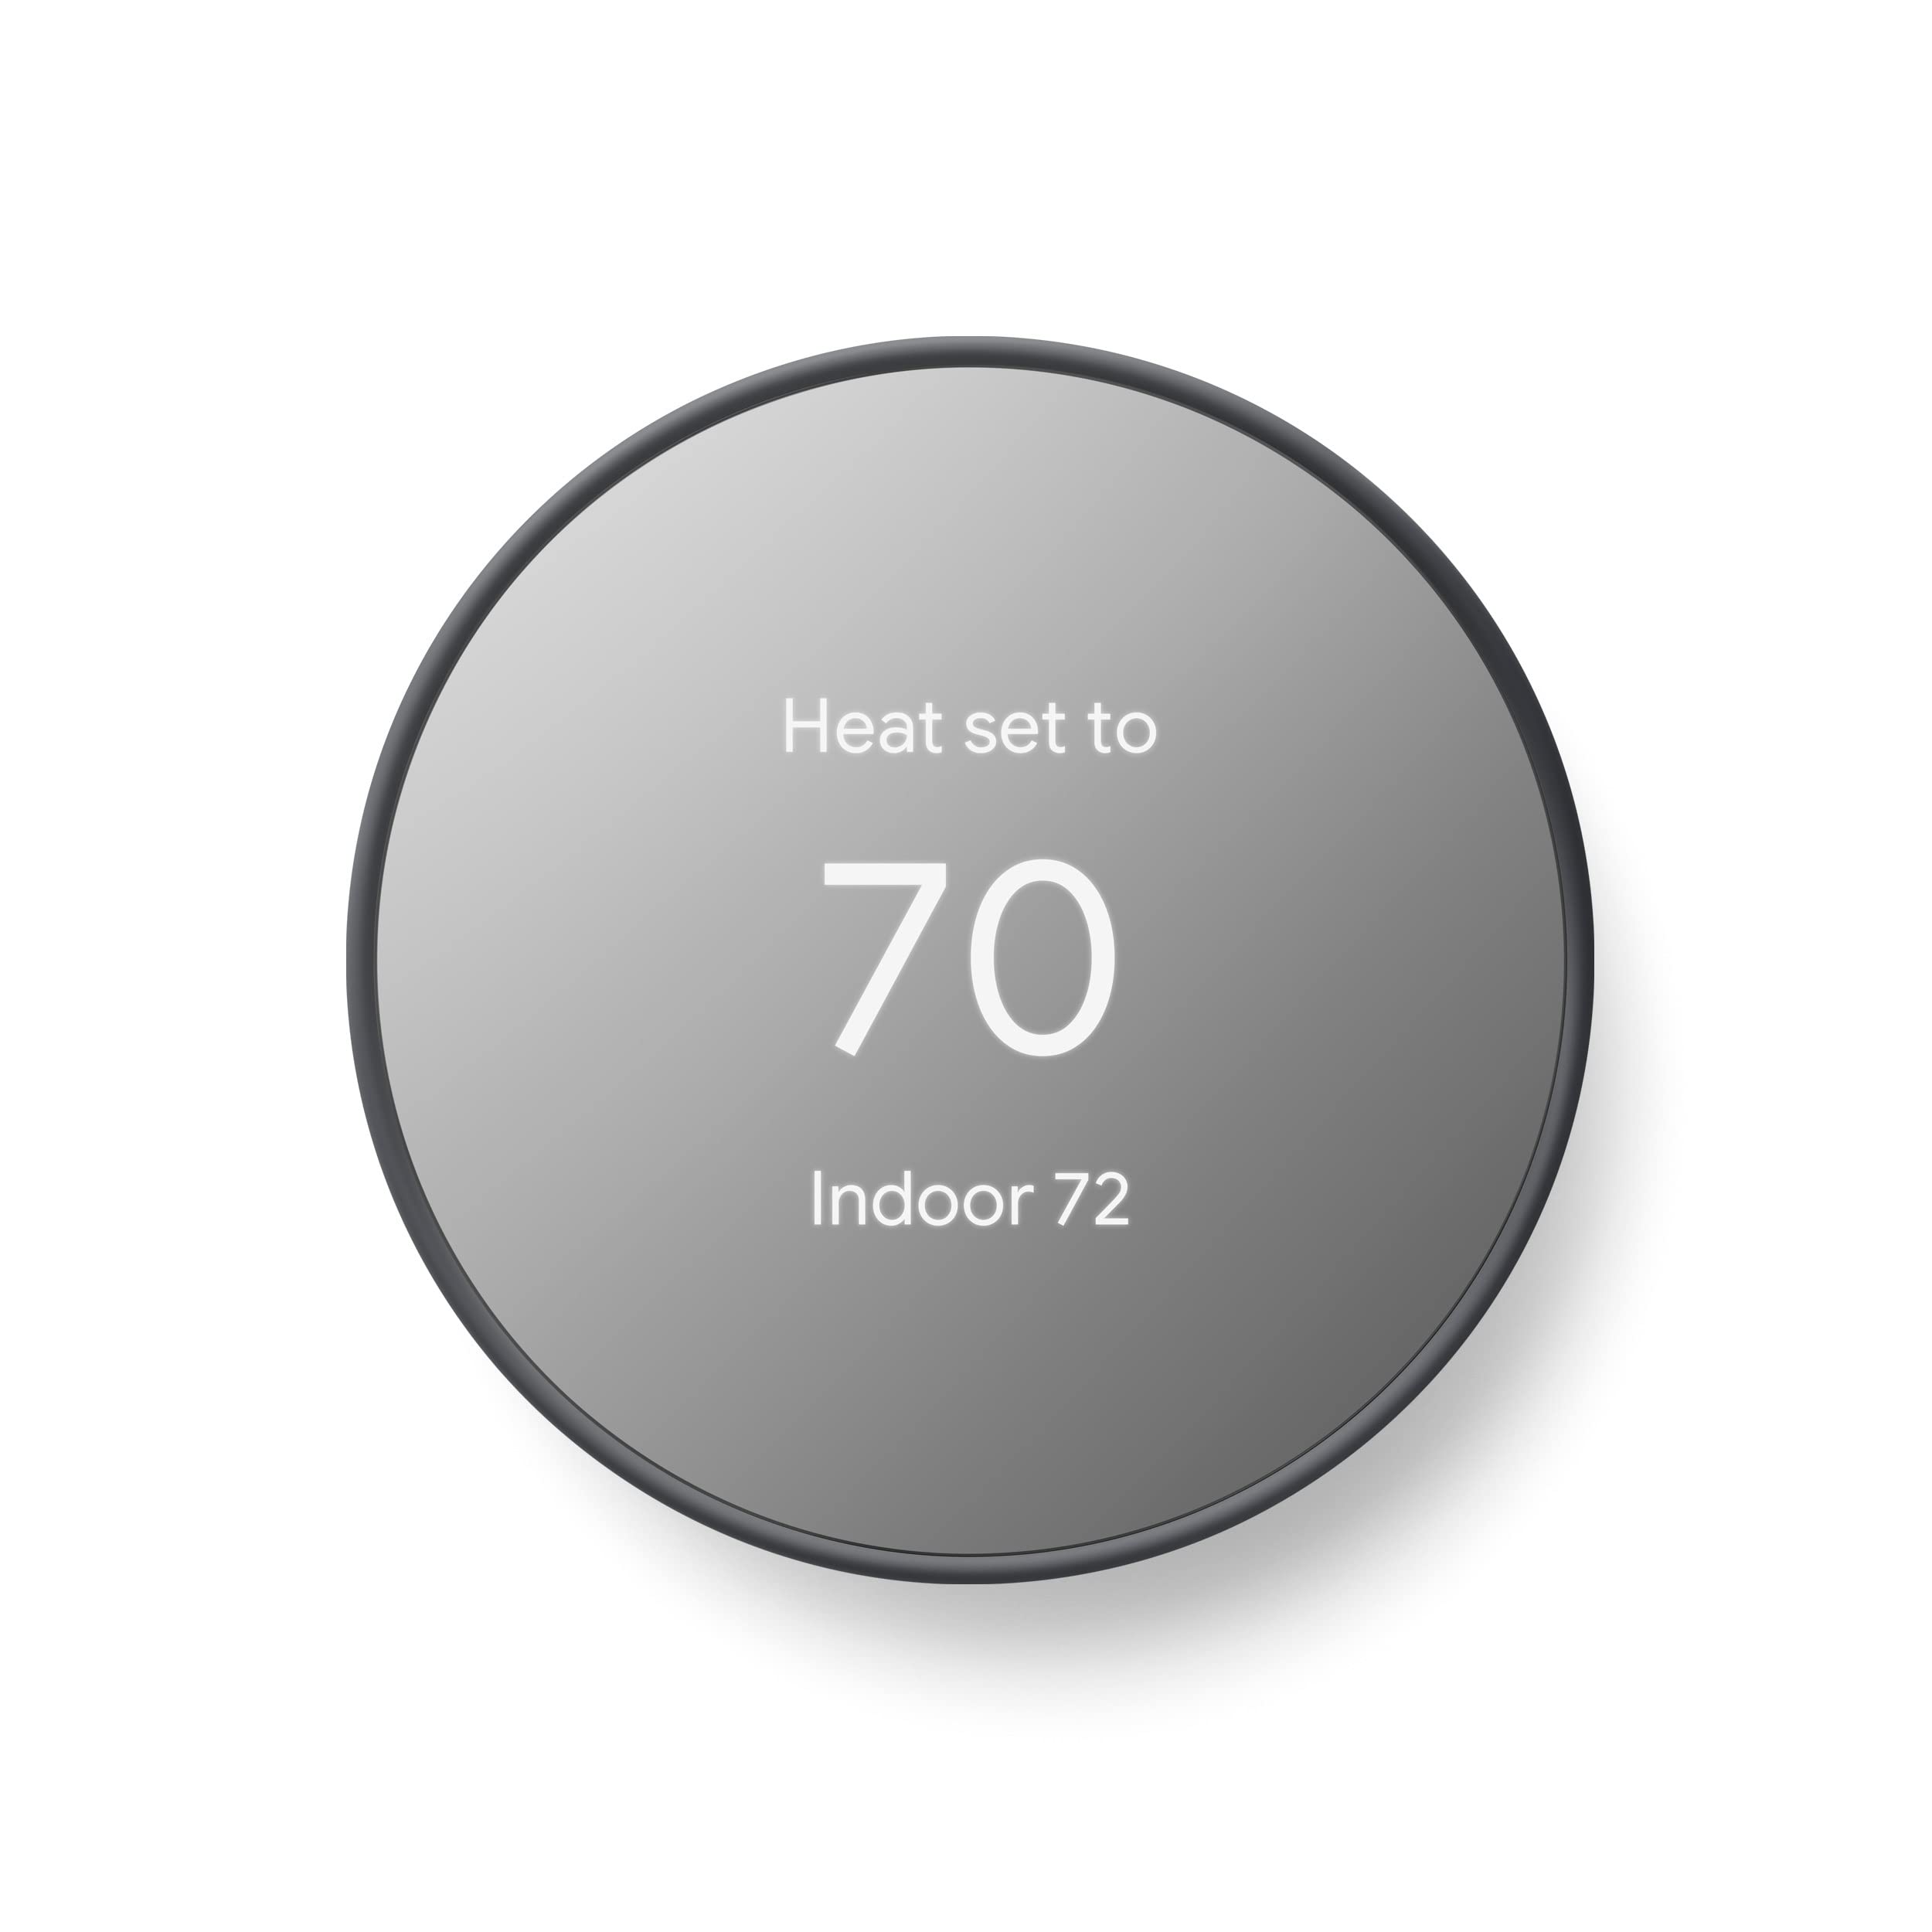 Google Nest 온도 조절기 - 가정용 스마트 온도 조절기 - 프로그래밍 가능한 Wi-Fi 온도 조절기